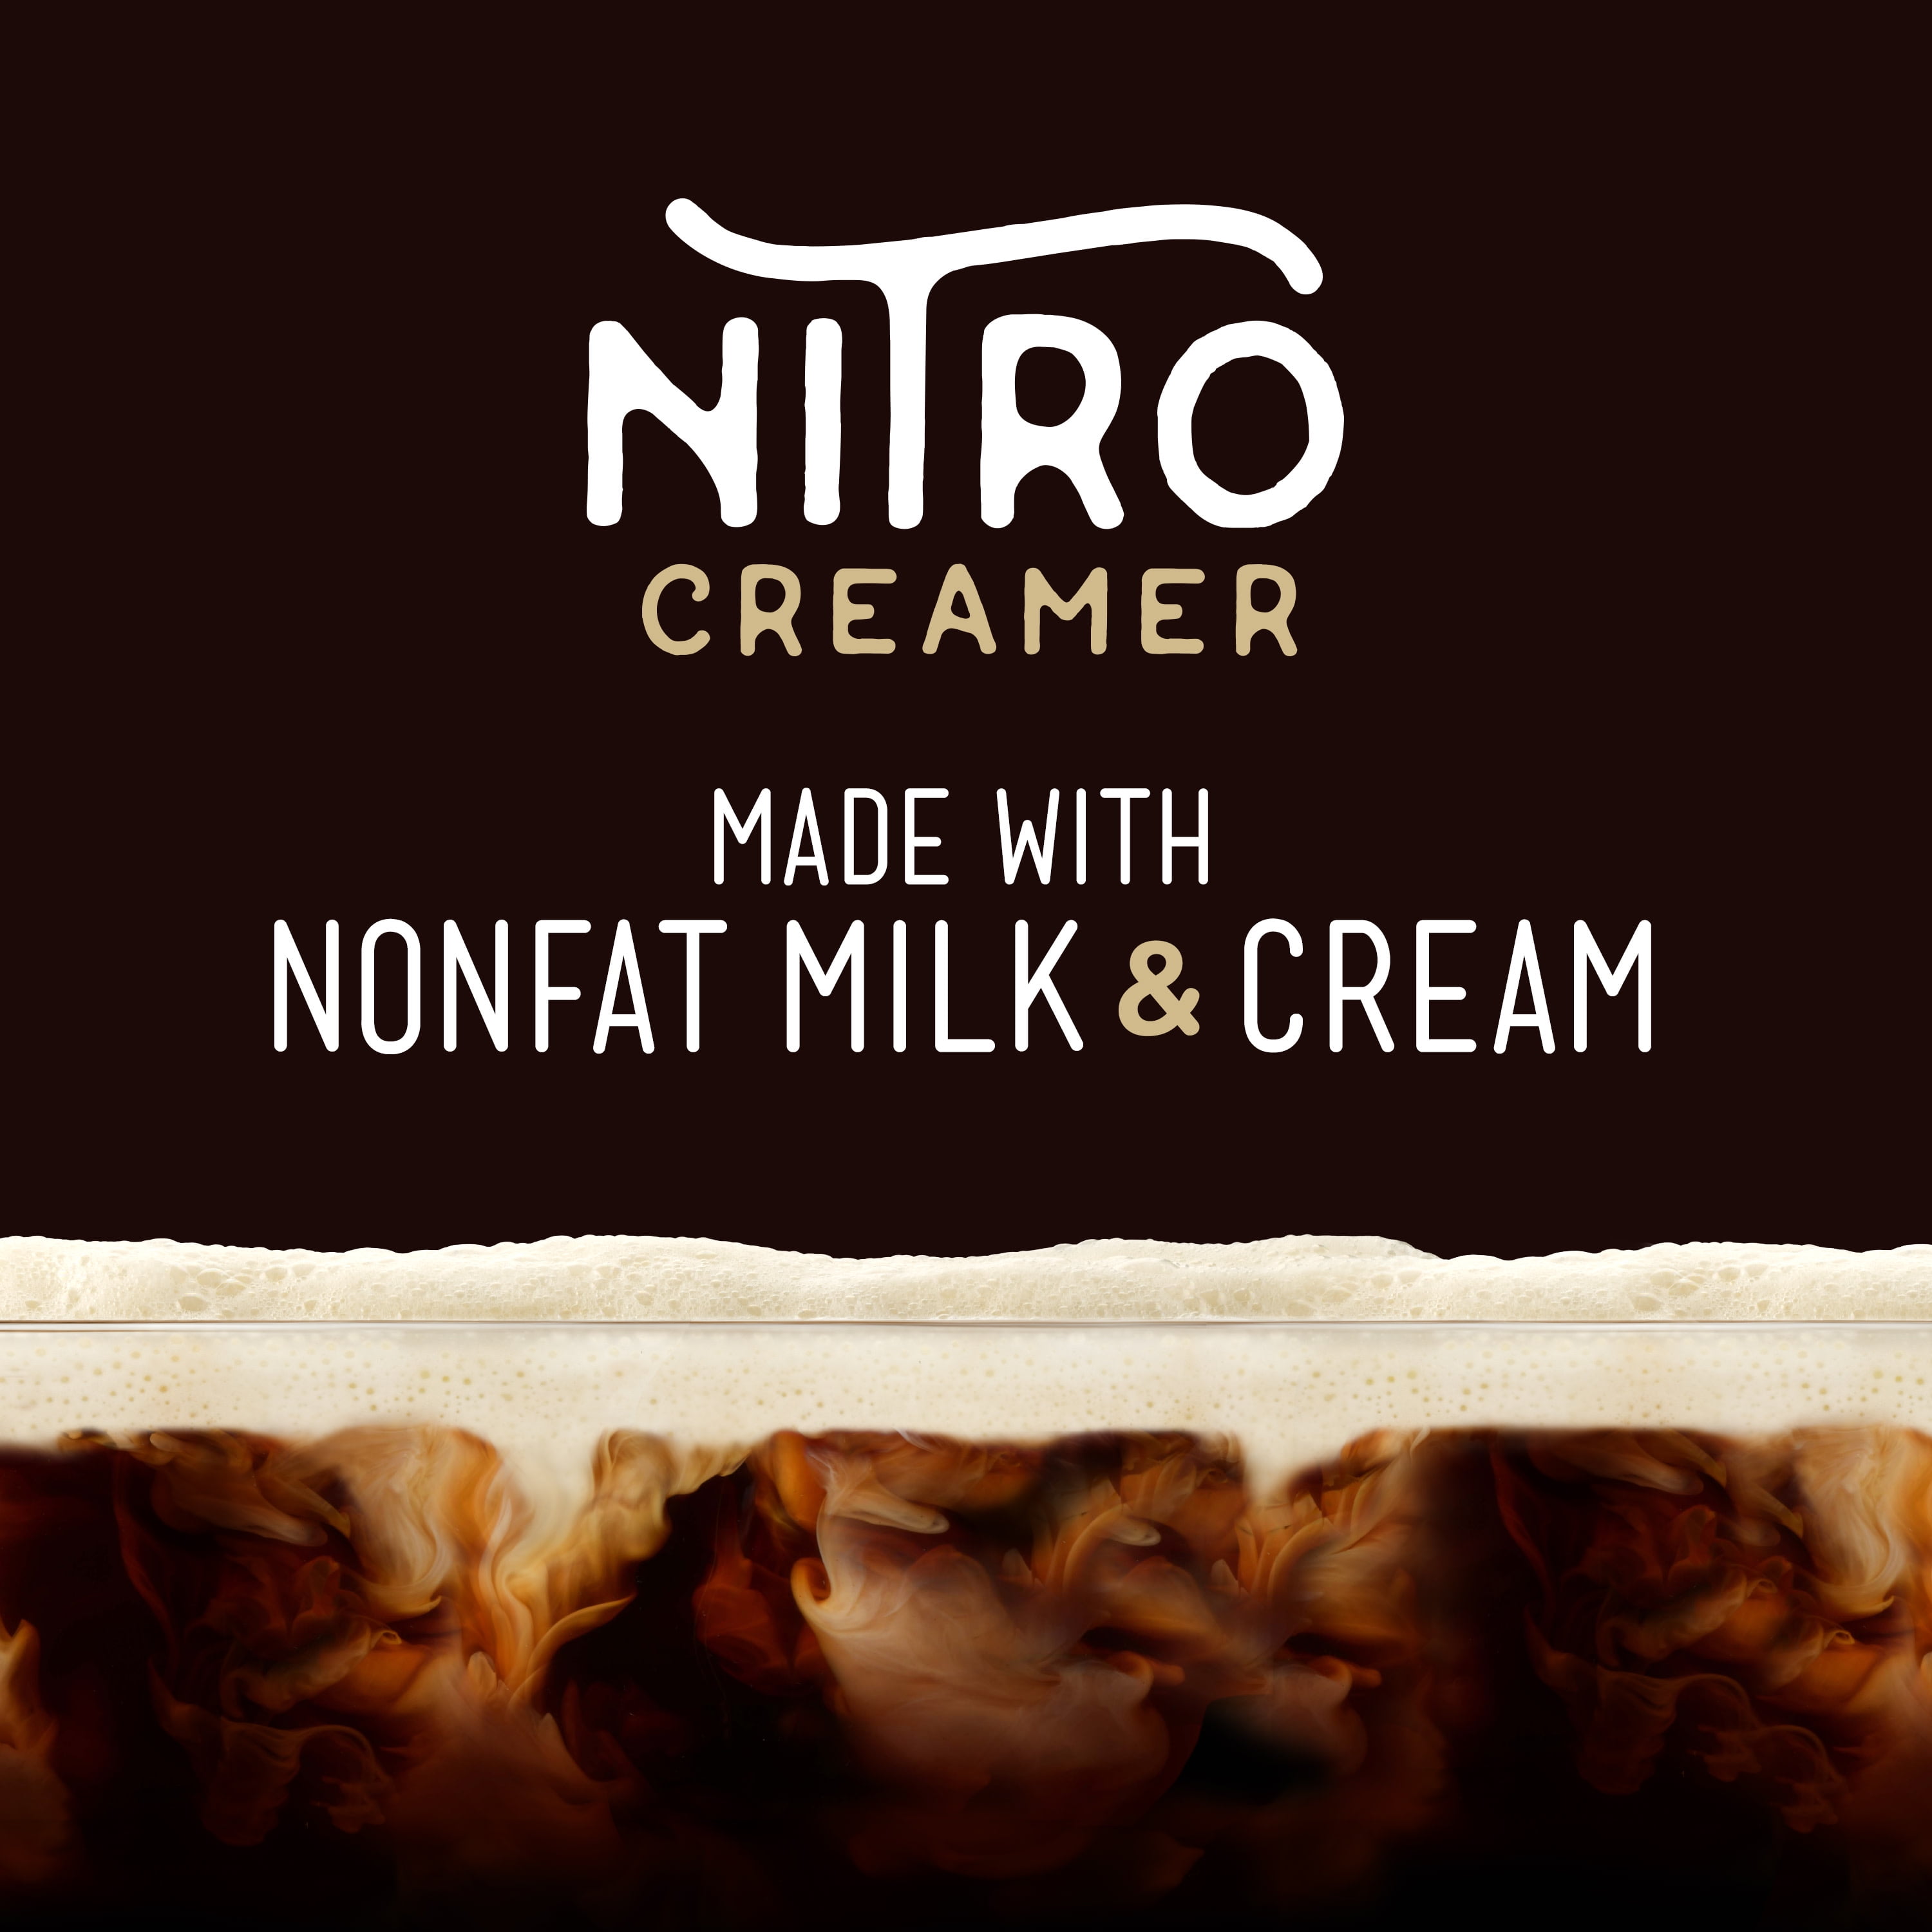 new design 1000ml nitro coffee cream